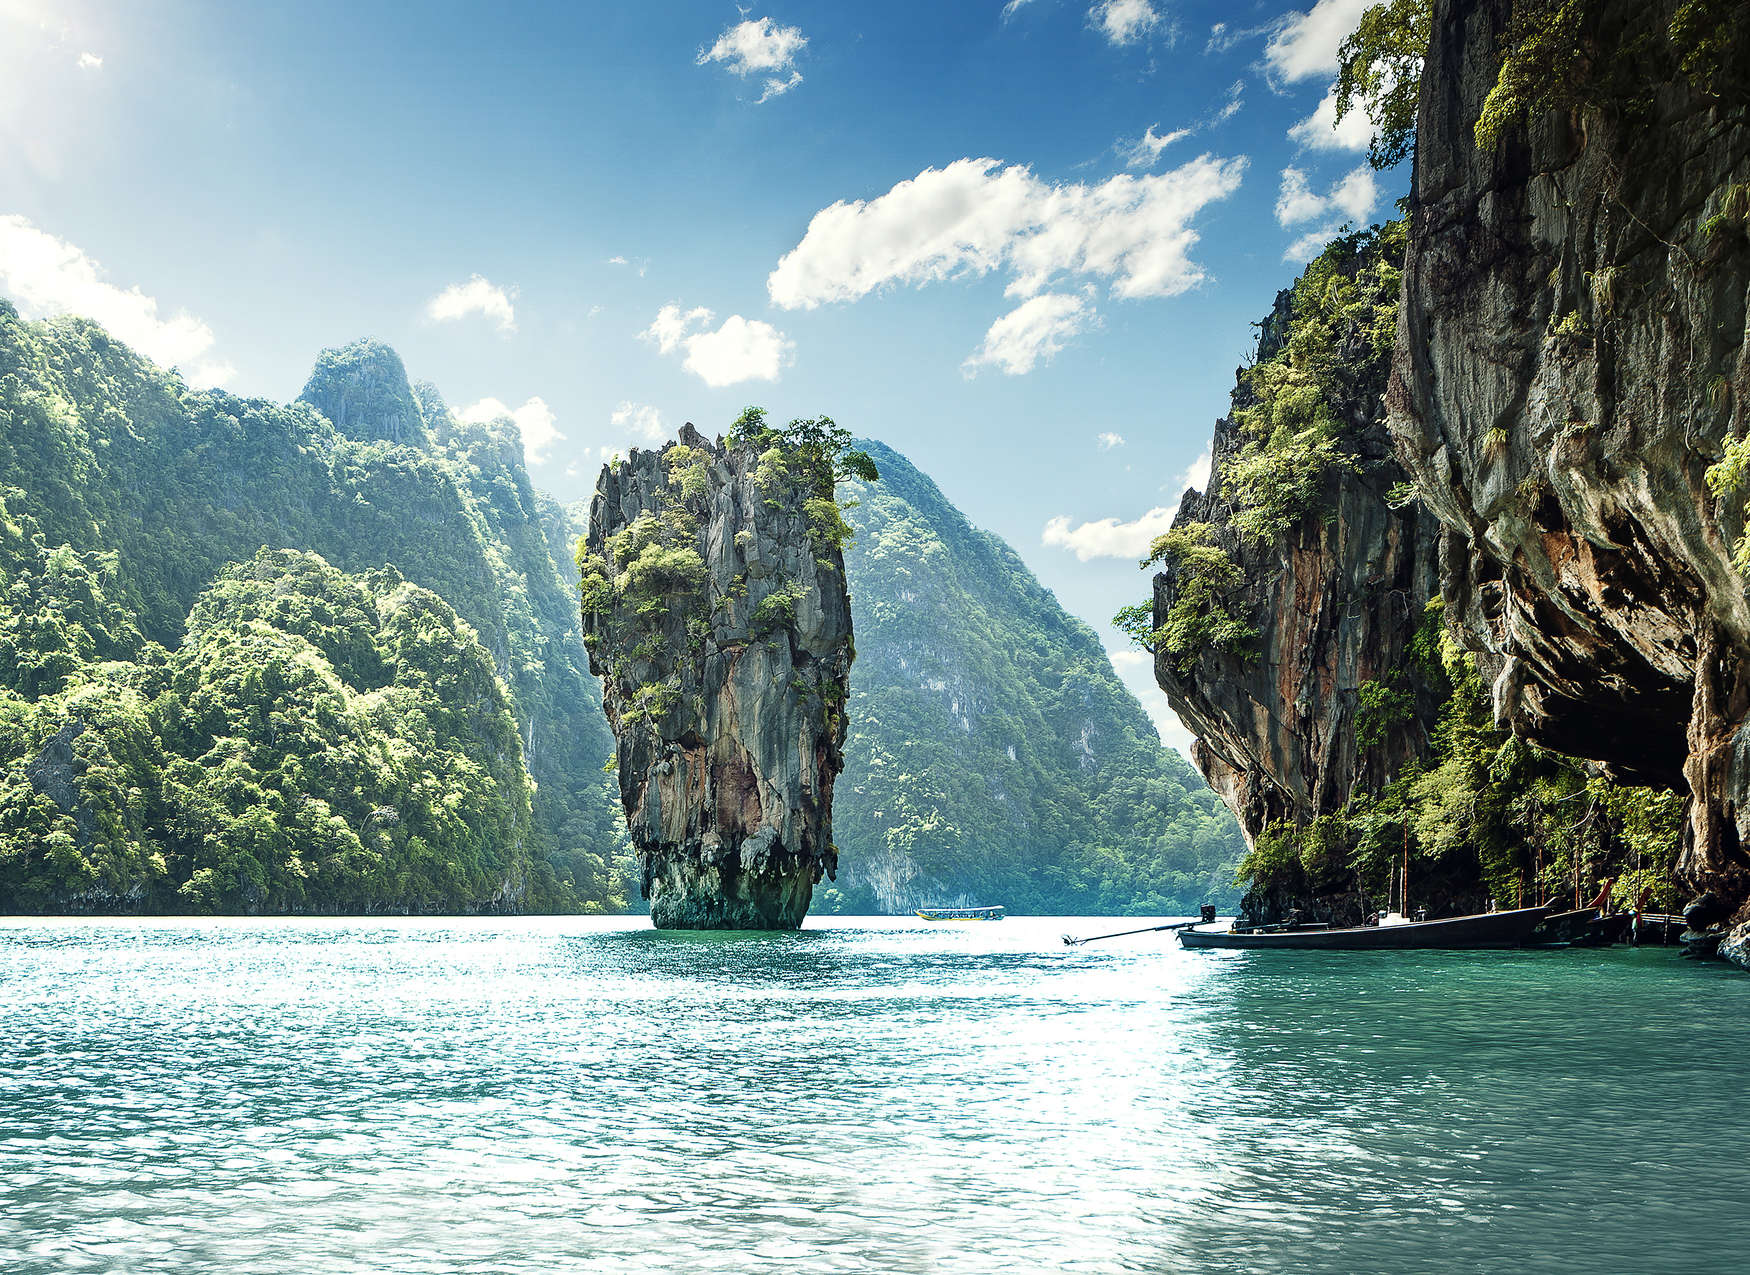             Fotobehang met Paradijselijke mening van Berglandschap in Thailand - Blauw, Groen, Wit
        